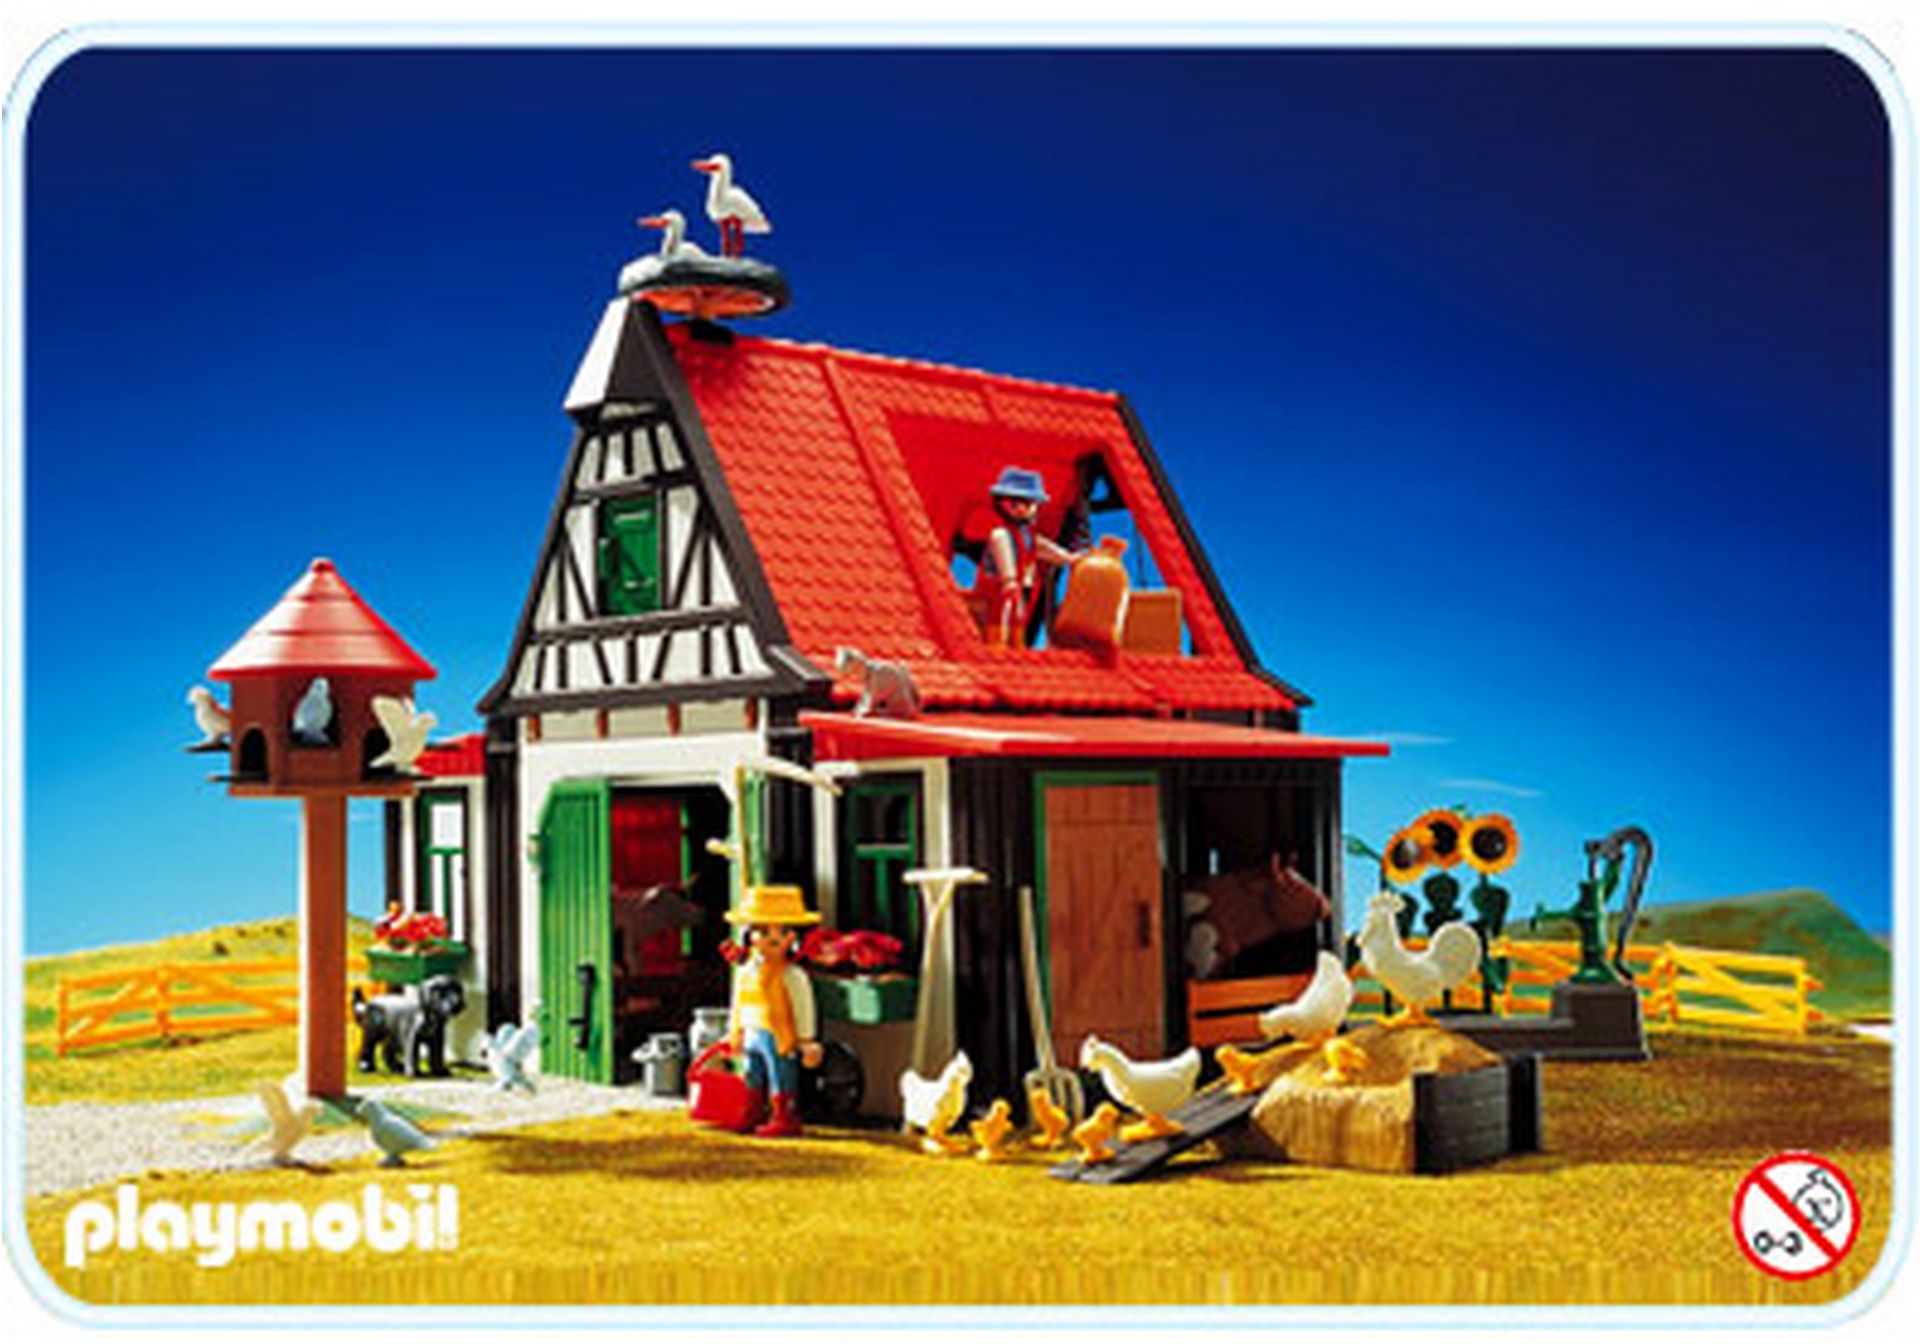 Playmobil® 11 Tauben Bauernhof 3716 7334 3666 Ritterburg Sammlung #422 